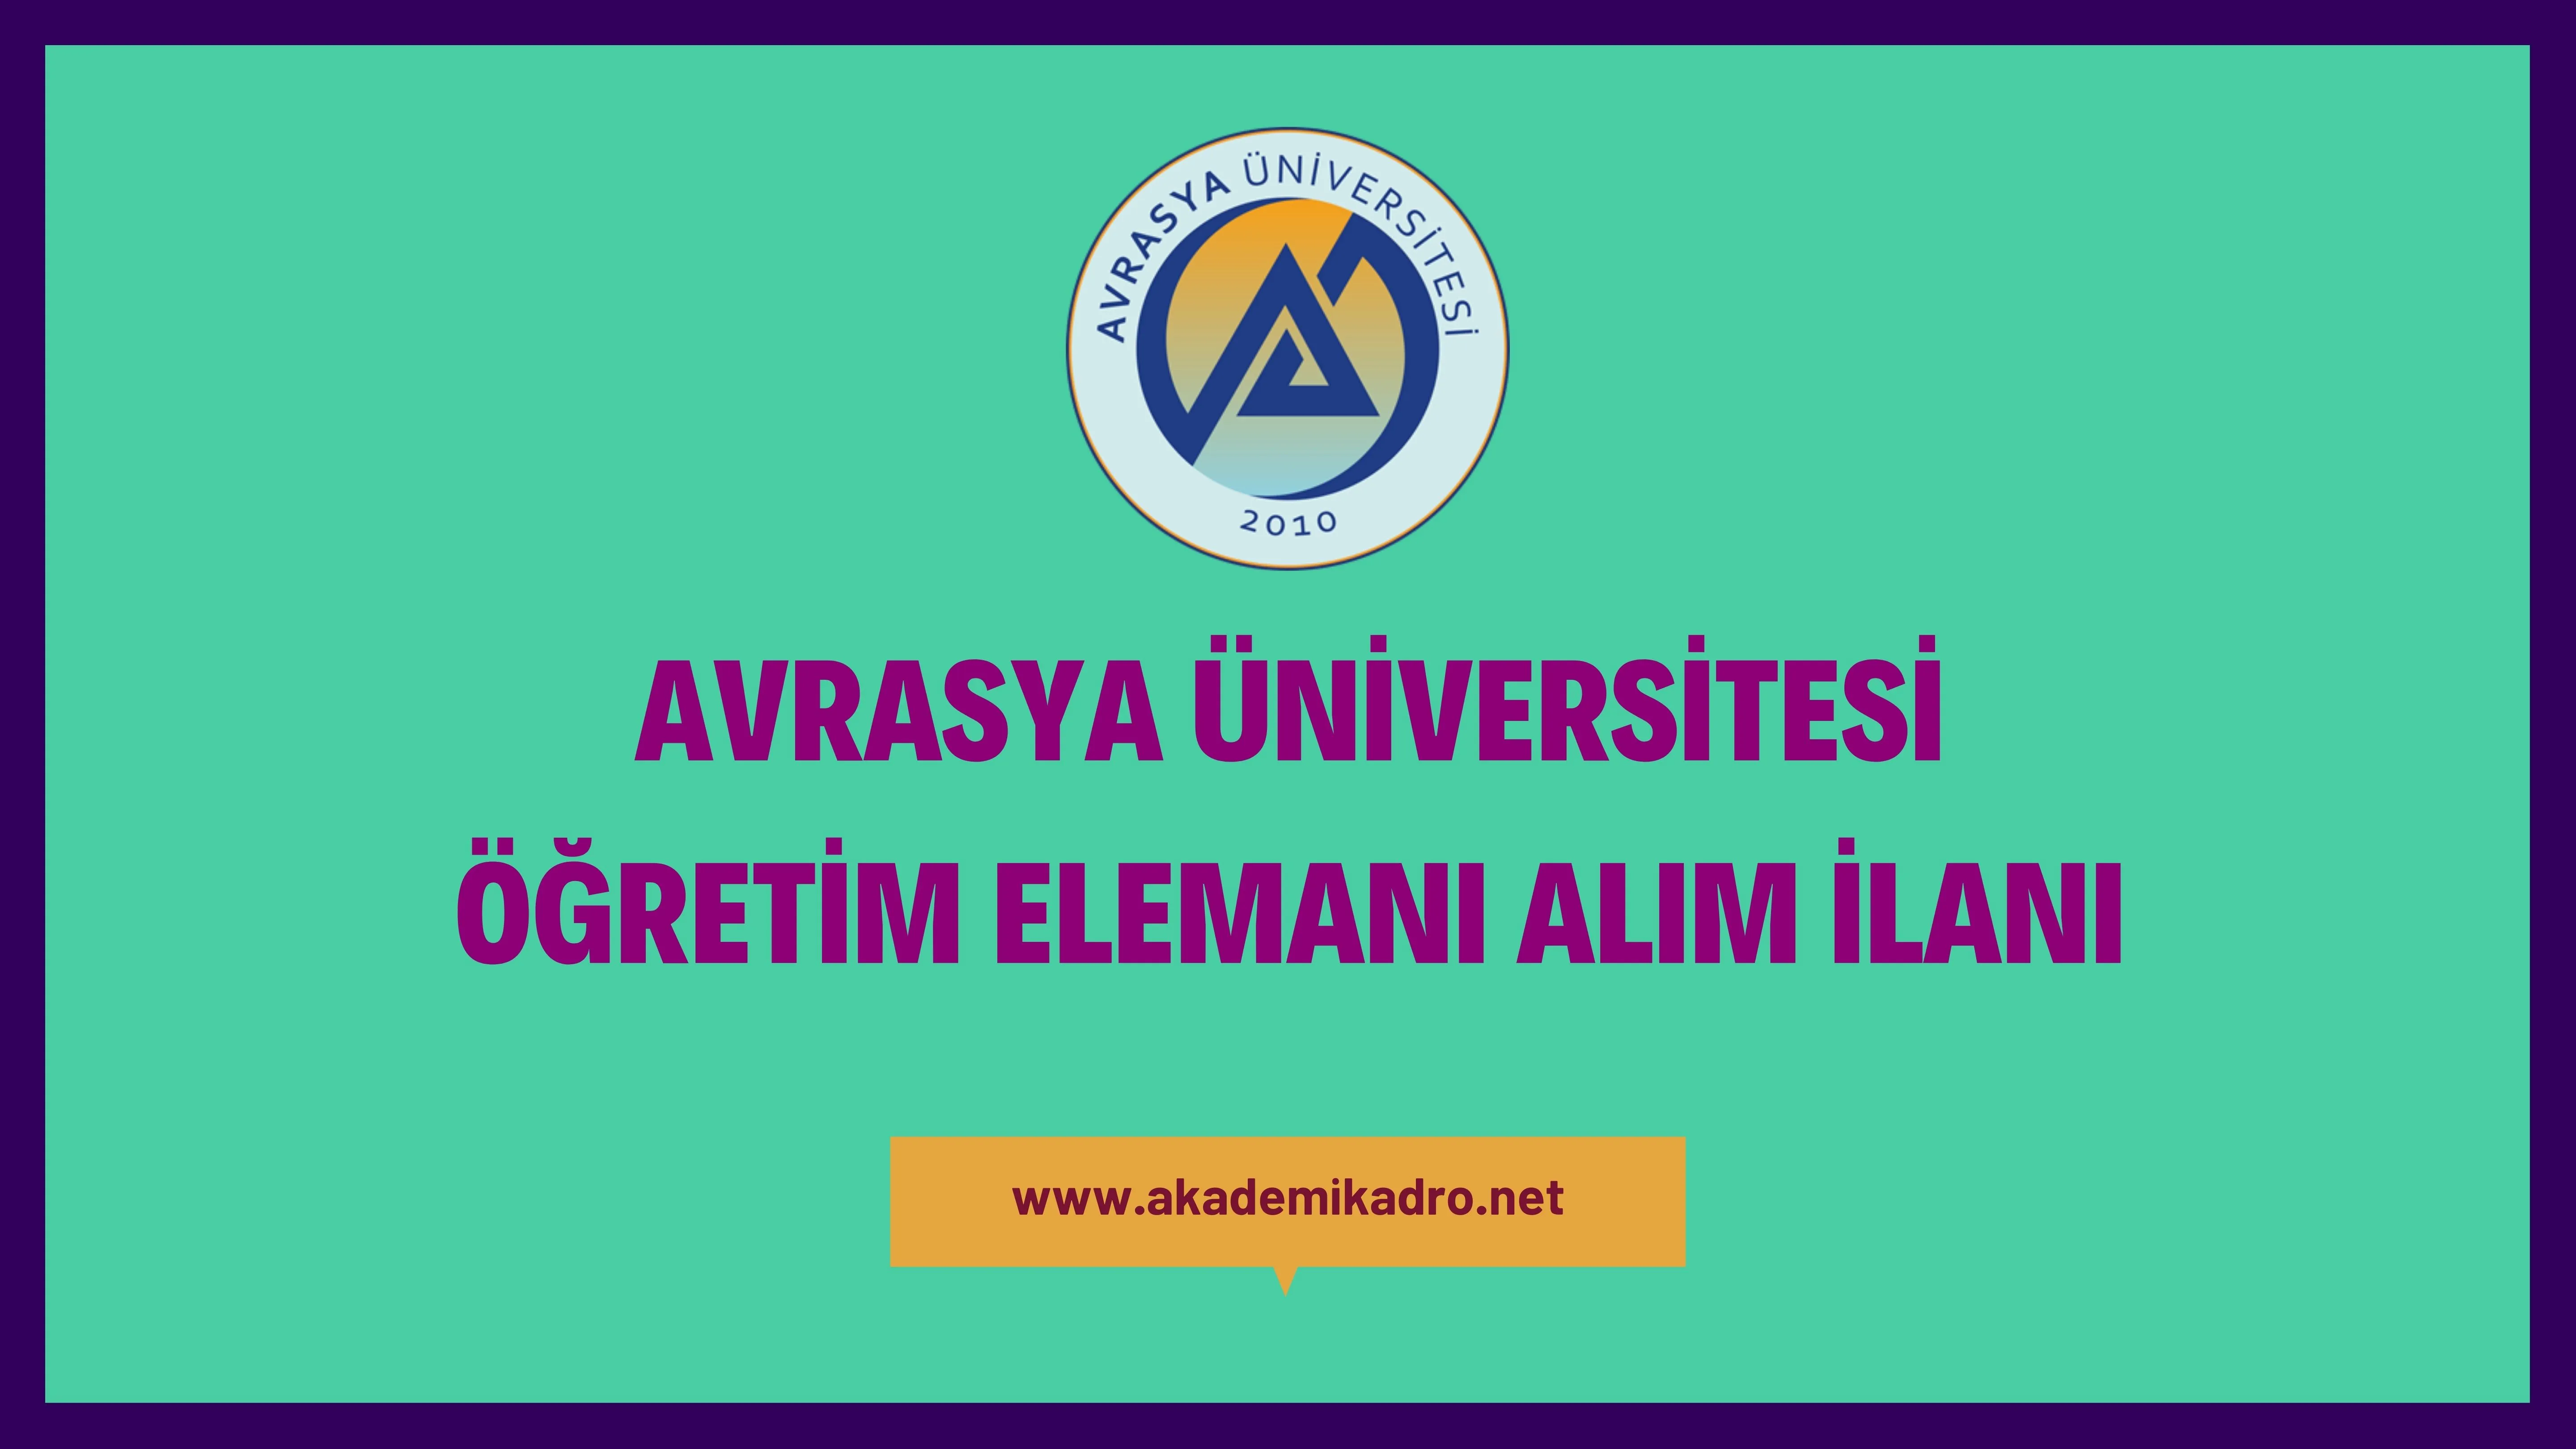 Avrasya Üniversitesi 15 Öğretim Görevlisi ve çok sayıda öğretim üyesi alacaktır.